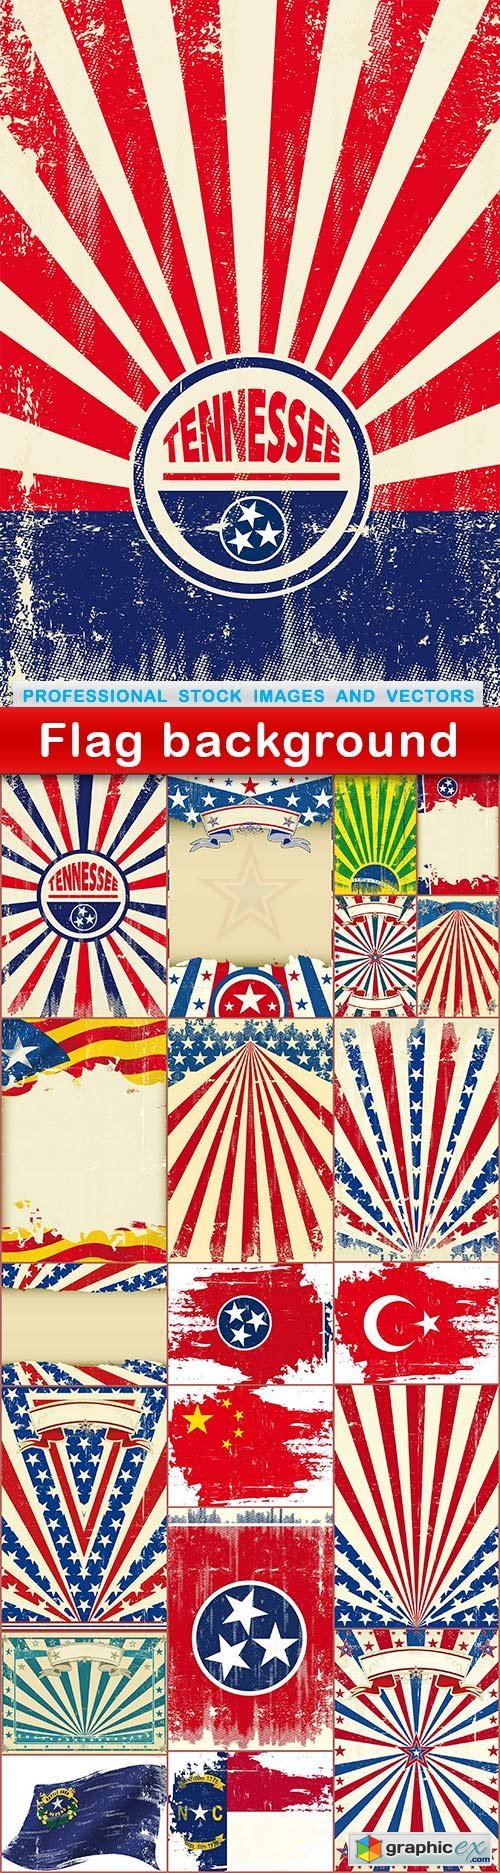 Flag background - 21 EPS